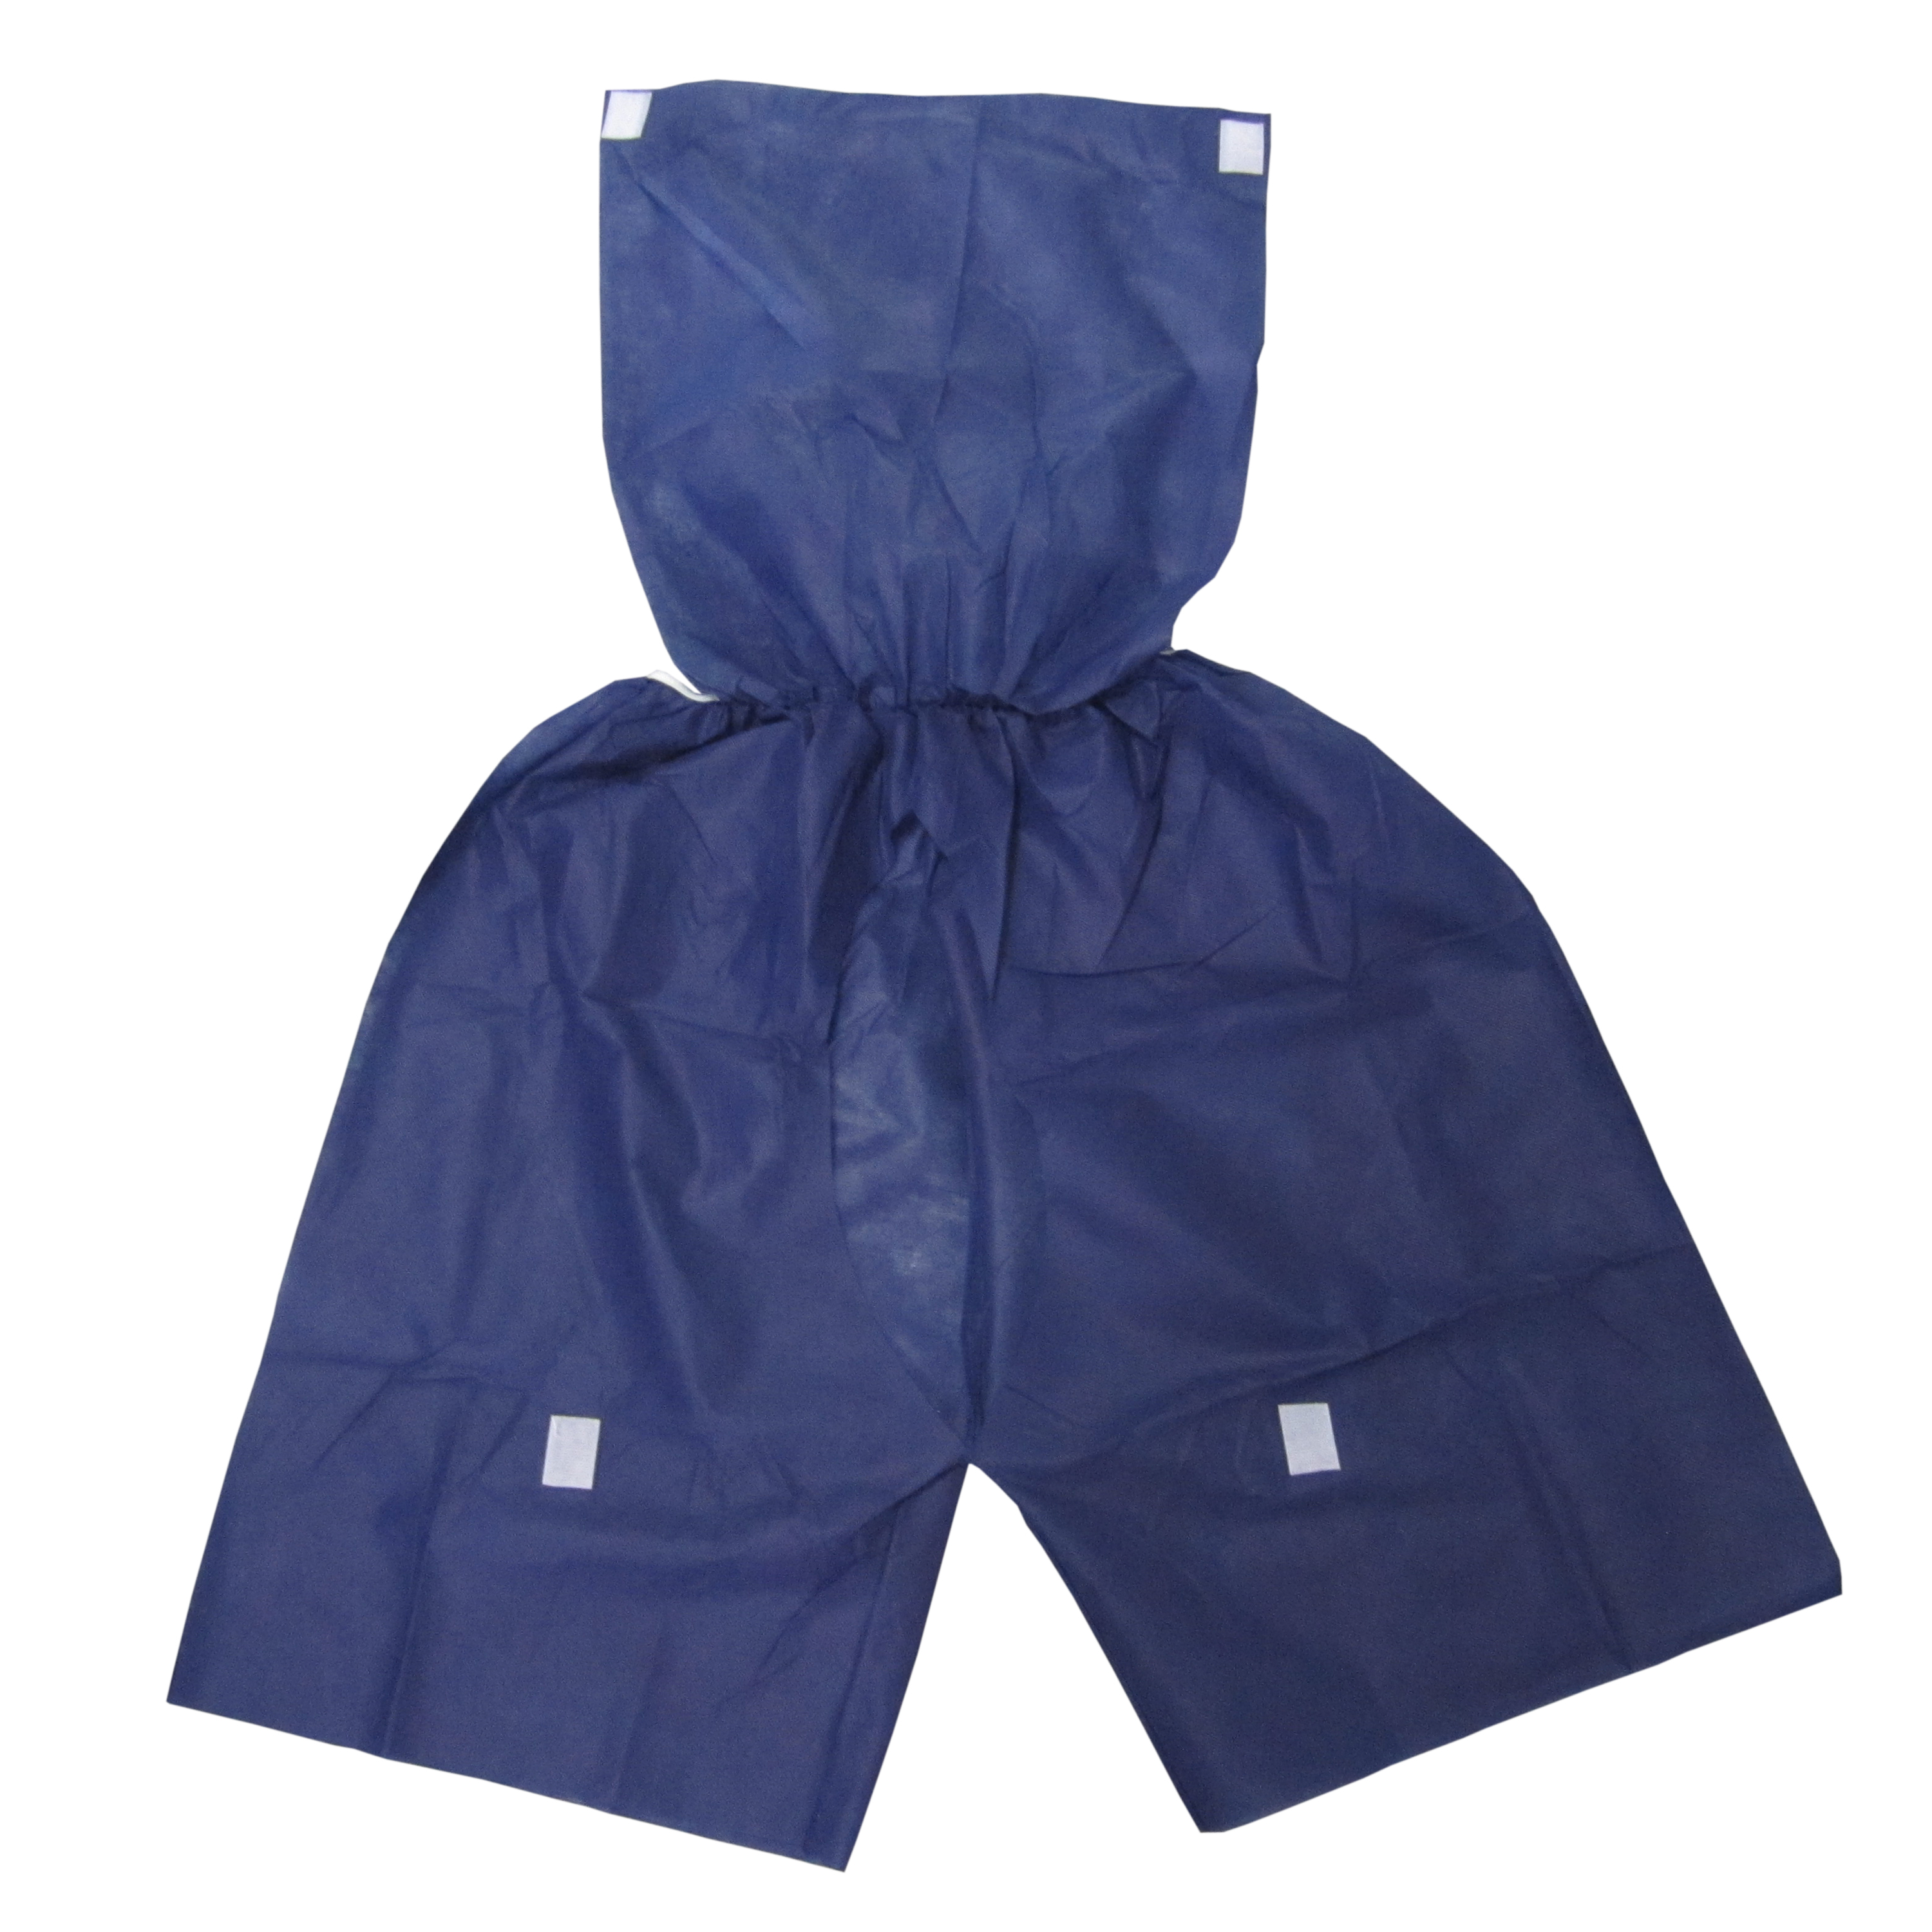 Disposable dark blue non-woven SBPP boxer